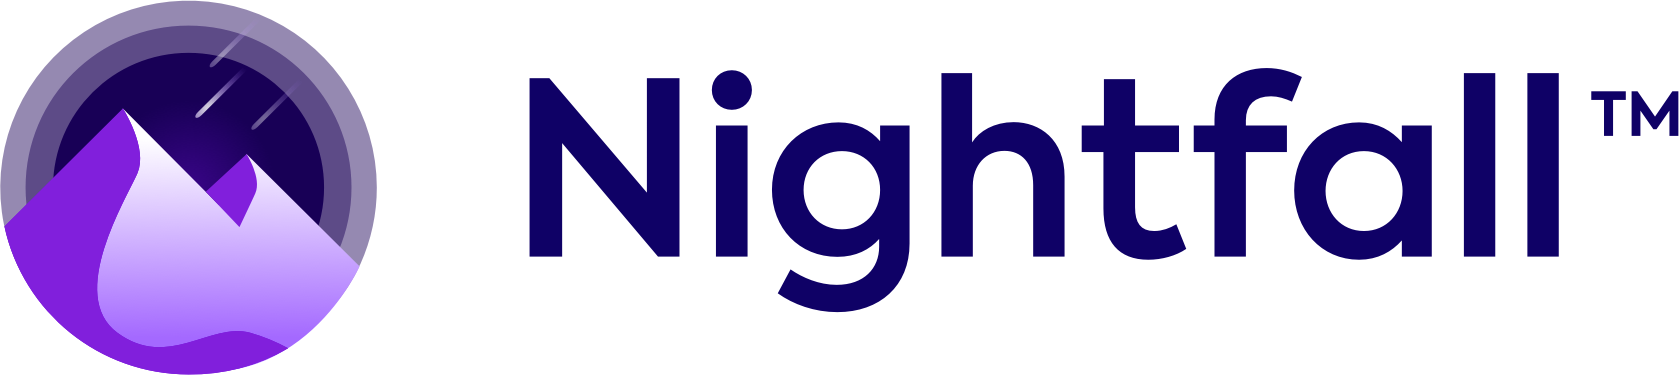 nightfall-dark-logo-tm